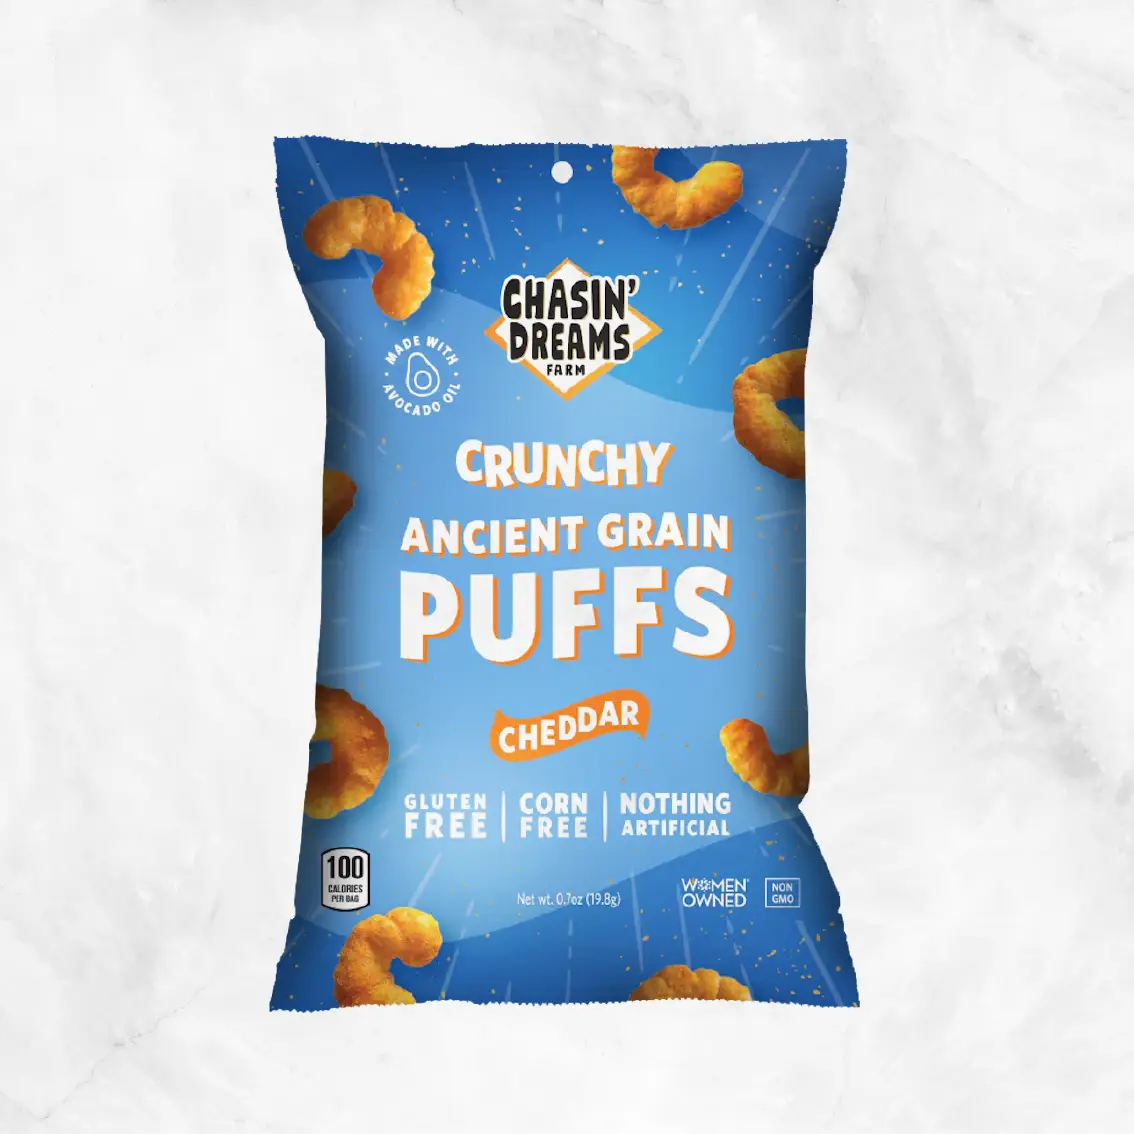 Crunchy Ancient Grain Cheddar Puffs